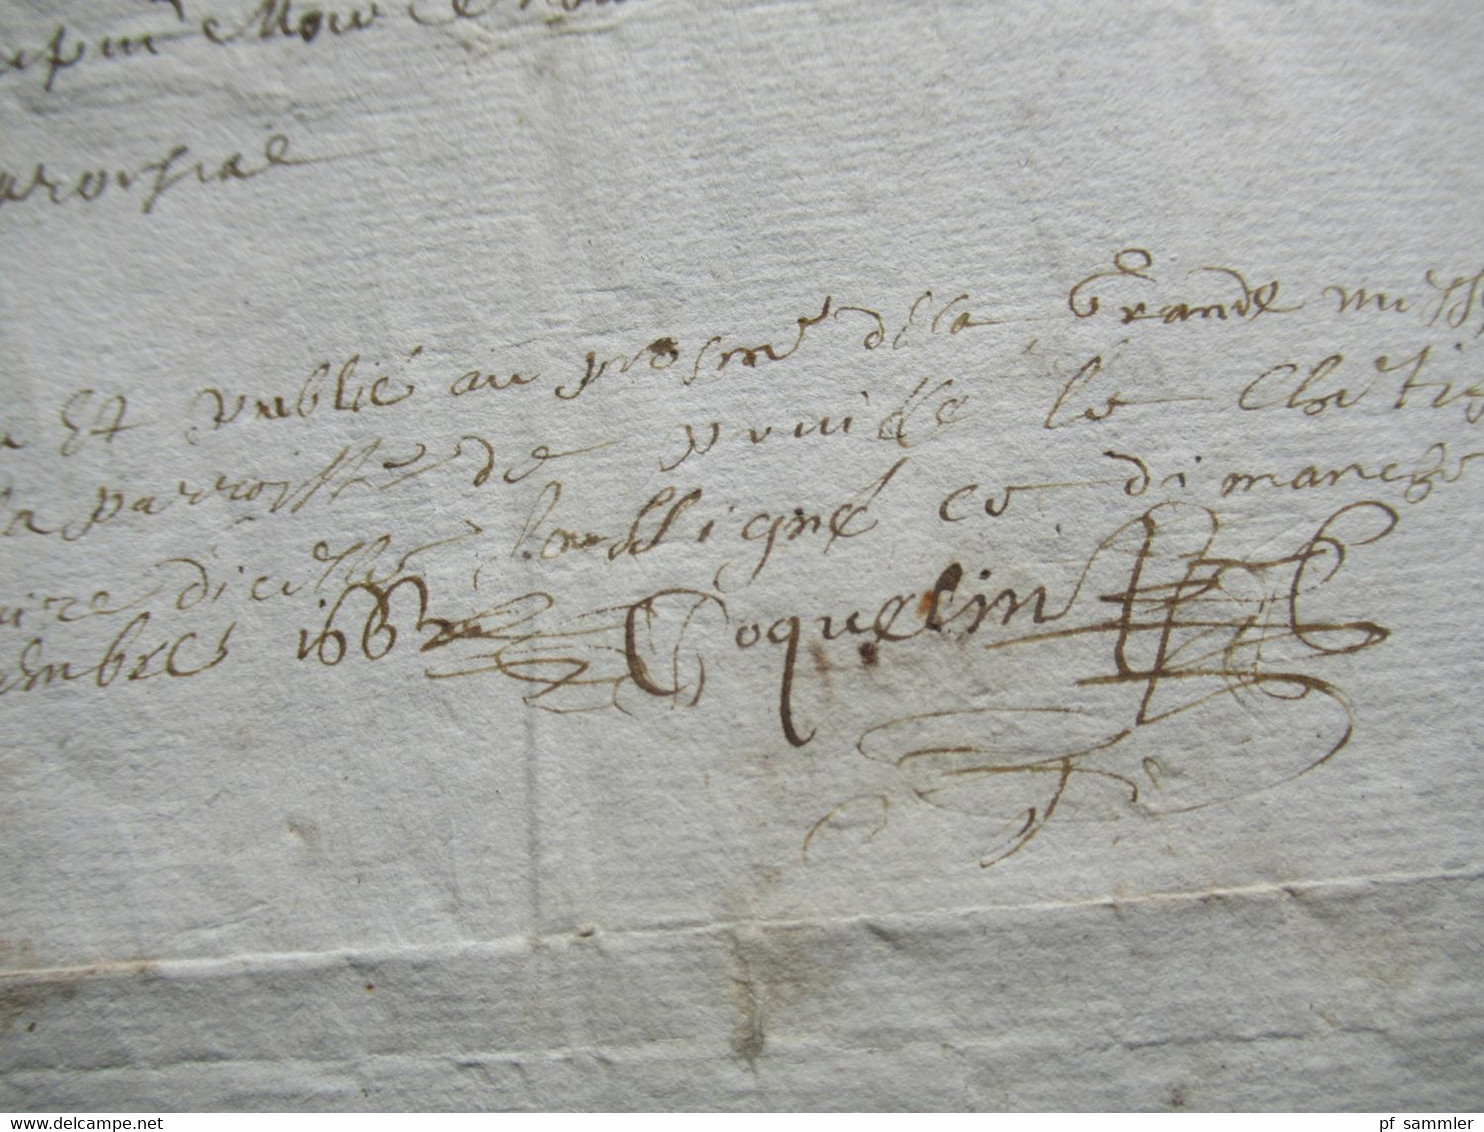 Frankreich Brief / Dokument aus dem Jahr 1662 / 17. Jahrhundert Faltbrief mit Inhalt und Schnörkelunterschrift